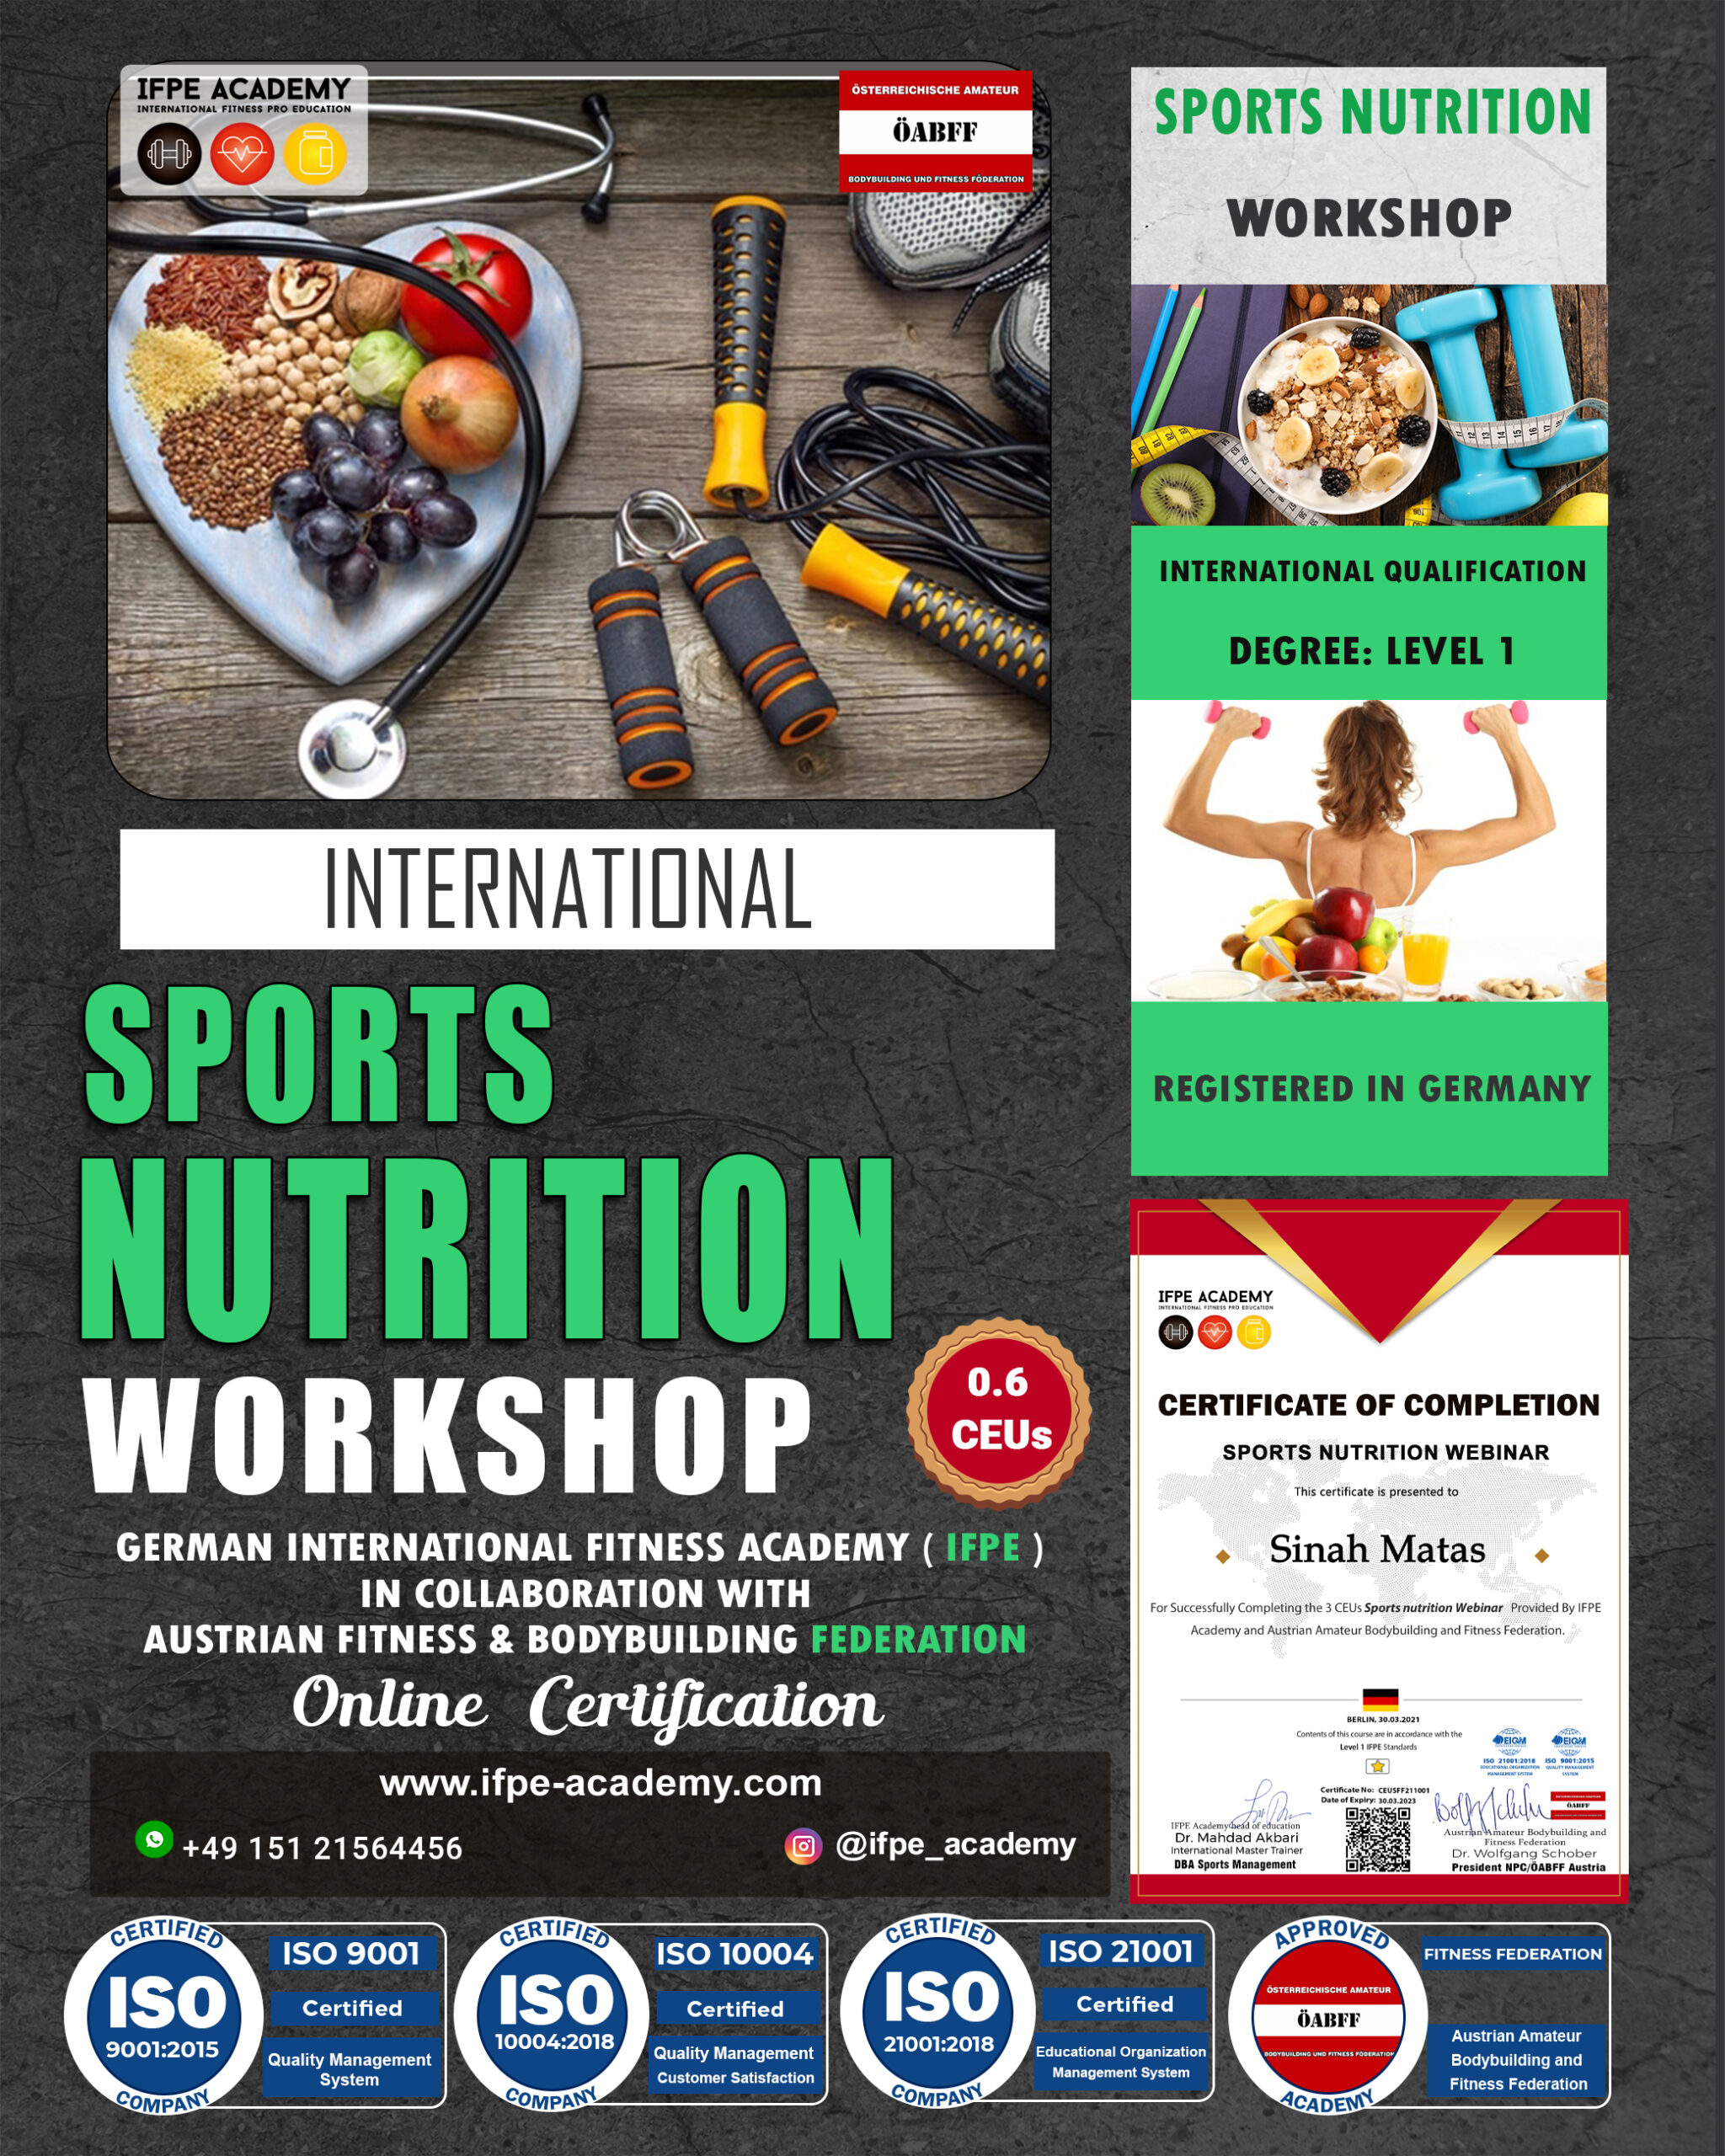 Sports nutrition workshops